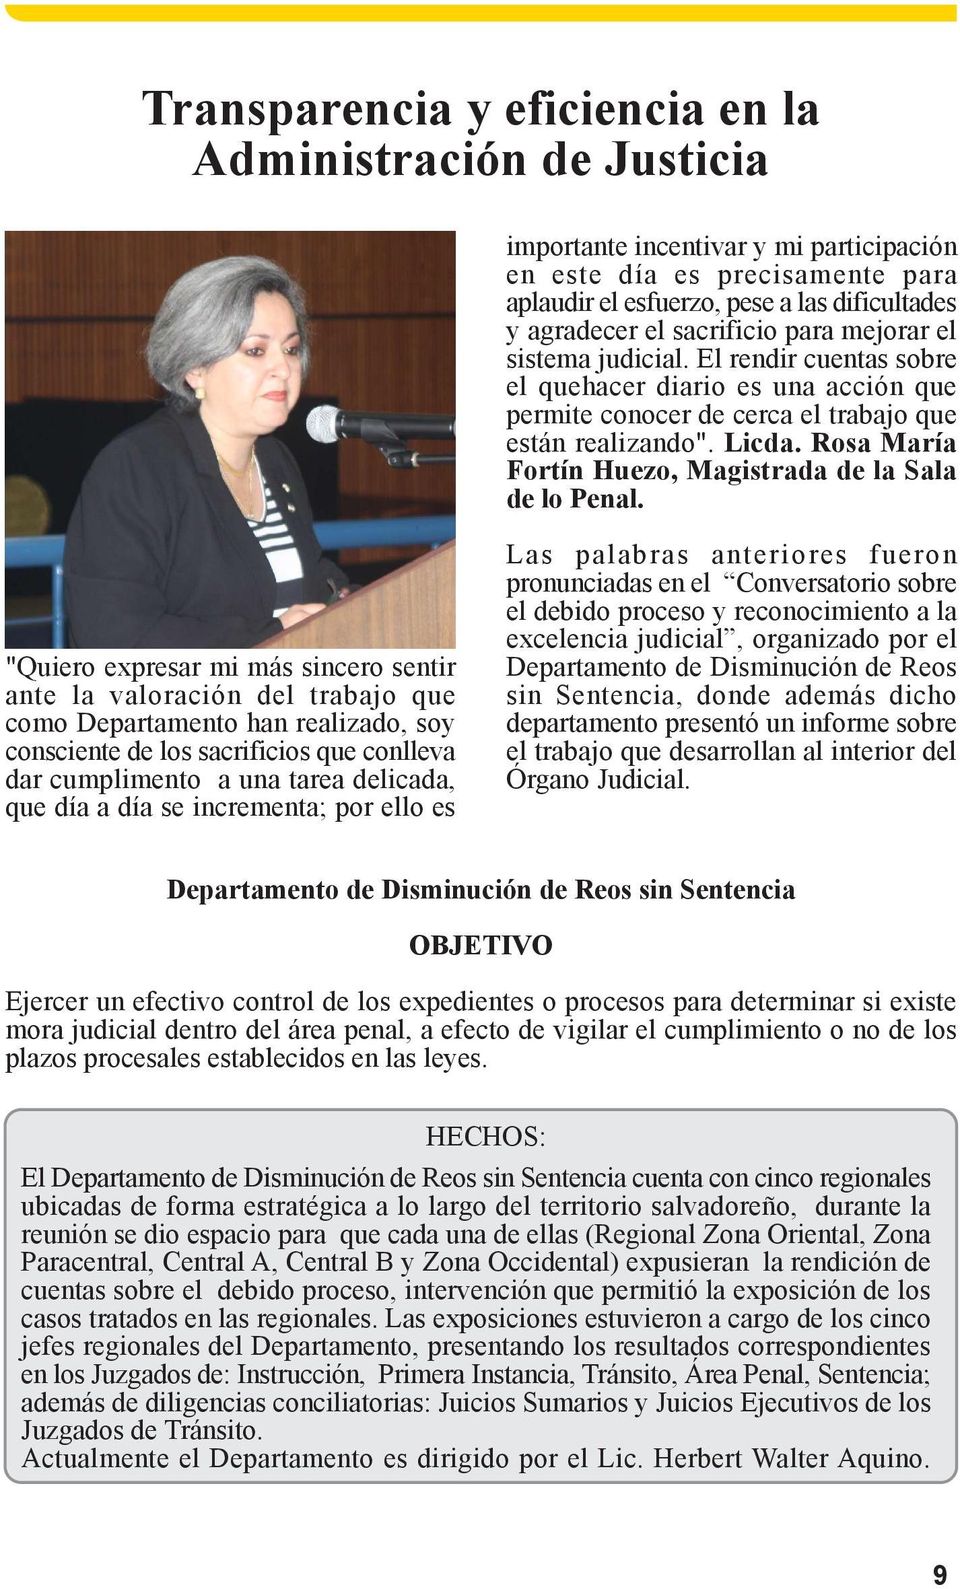 Rosa María Fortín Huezo, Magistrada de la Sala de lo Penal.